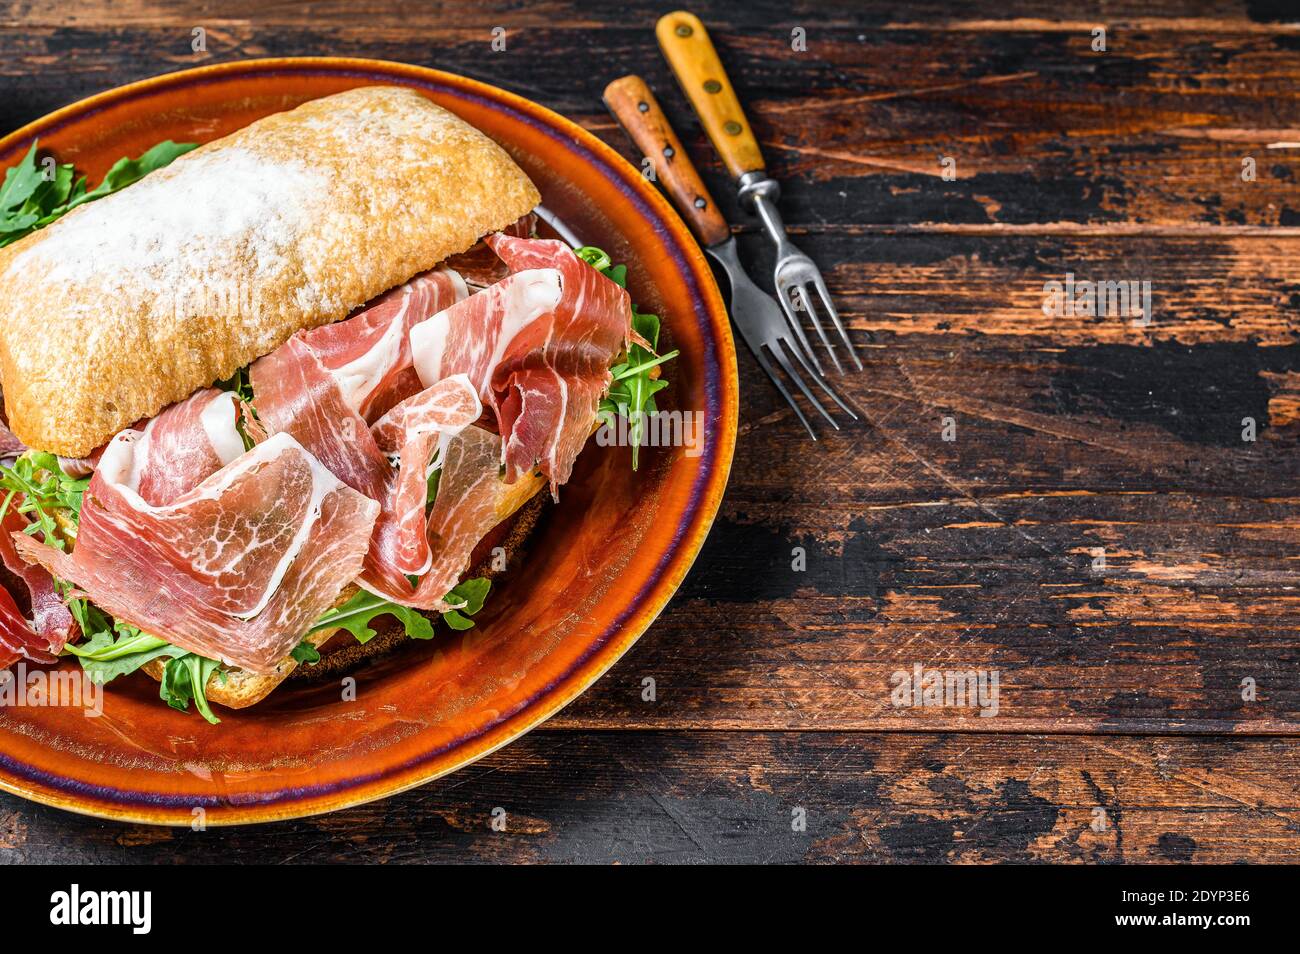 Spanish bocadillo de jamon, serrano ham sandwich on ciabatta bread with arugula. Dark wooden background. Top view. Copy space Stock Photo